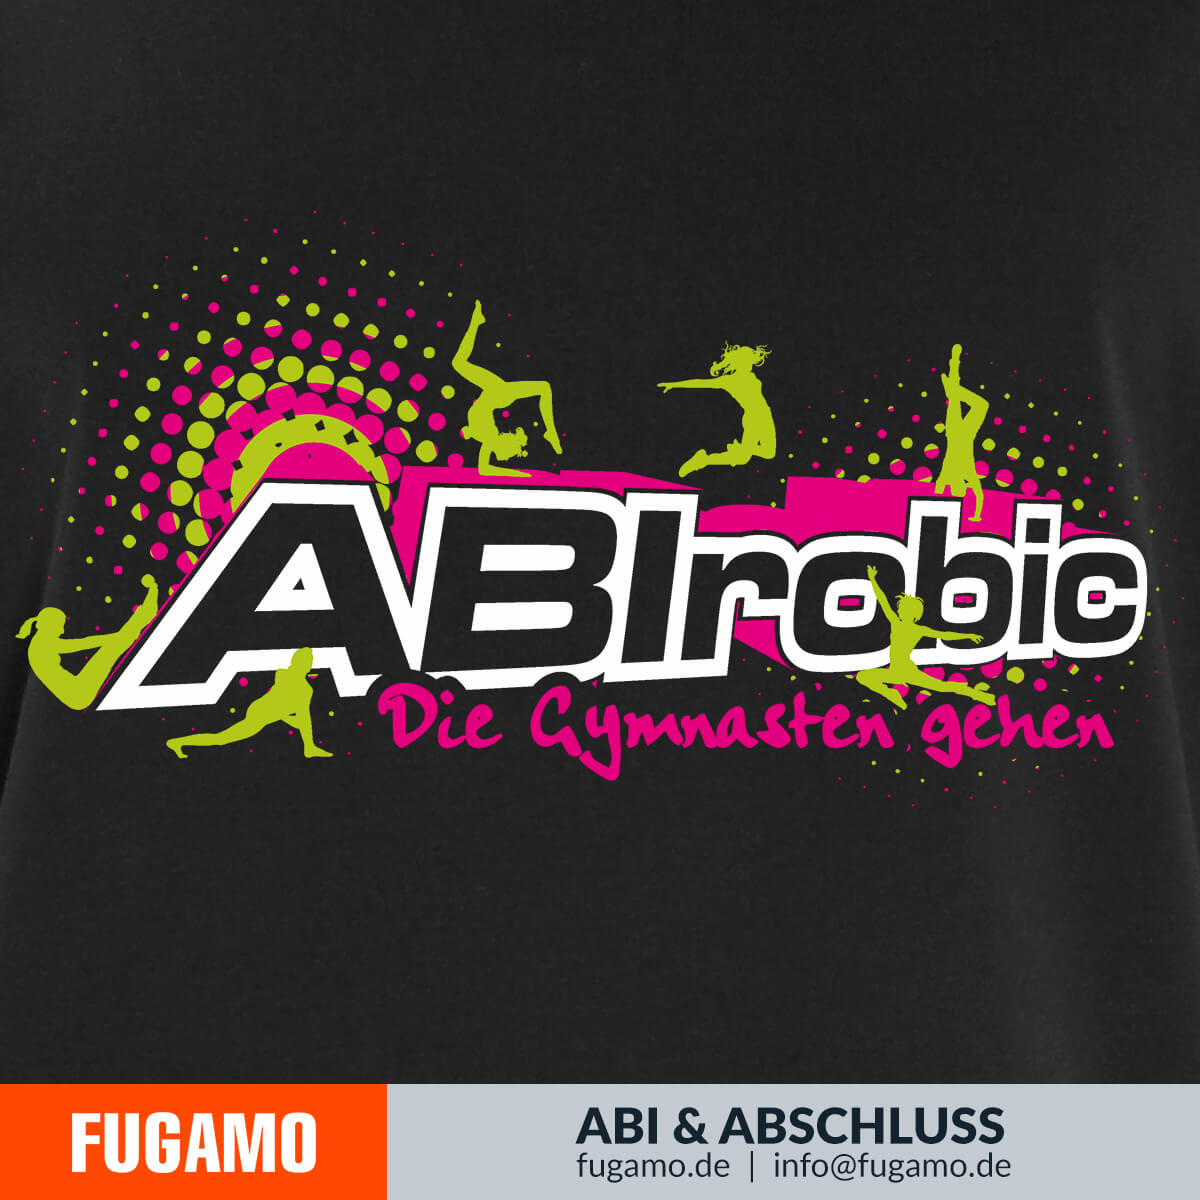 ABIrobic 01 - Die Gymnasten gehen